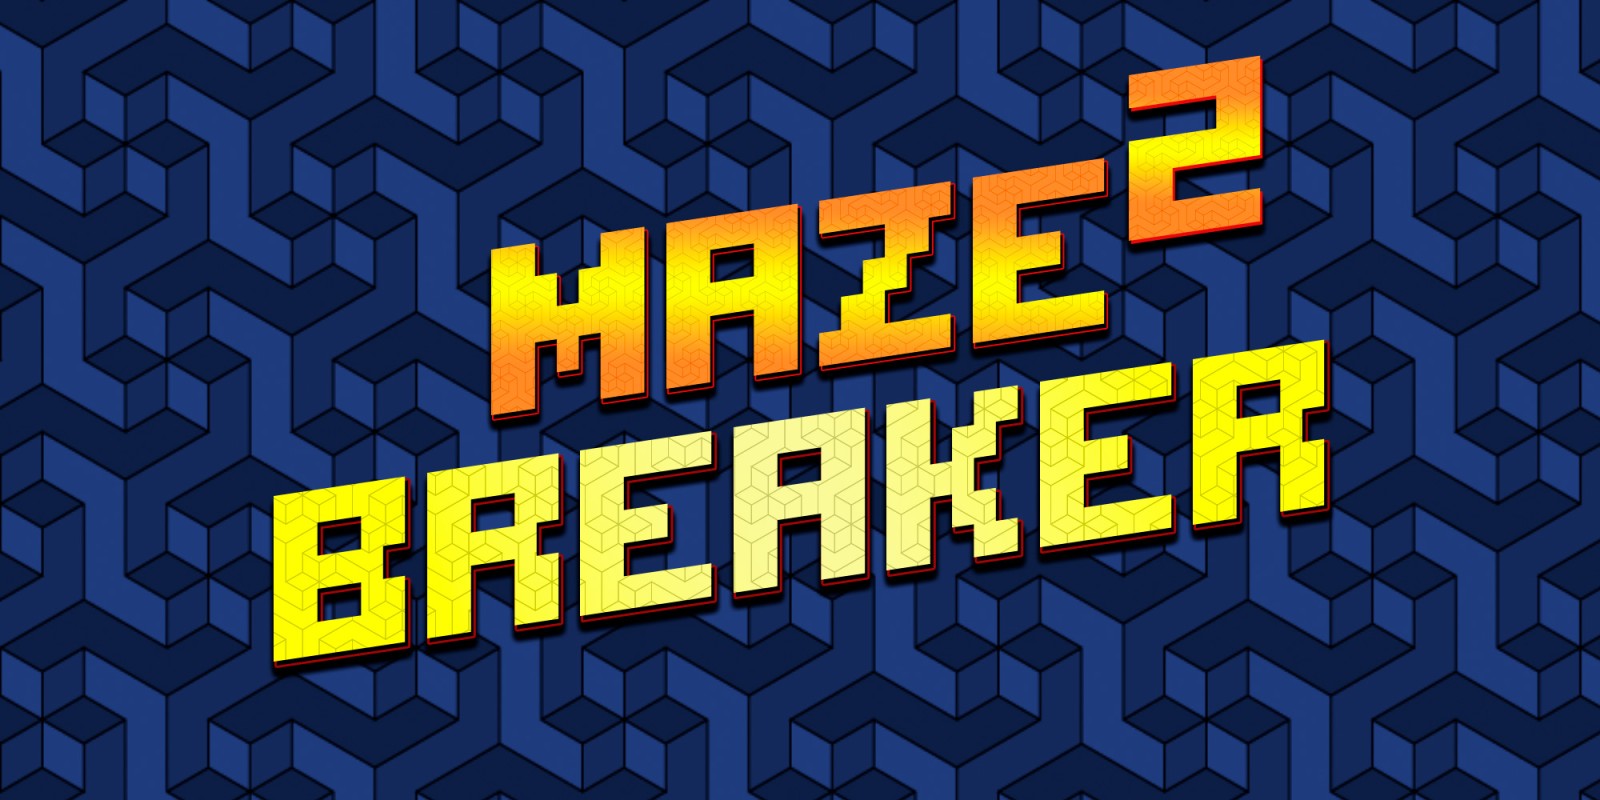 Maze Breaker 2